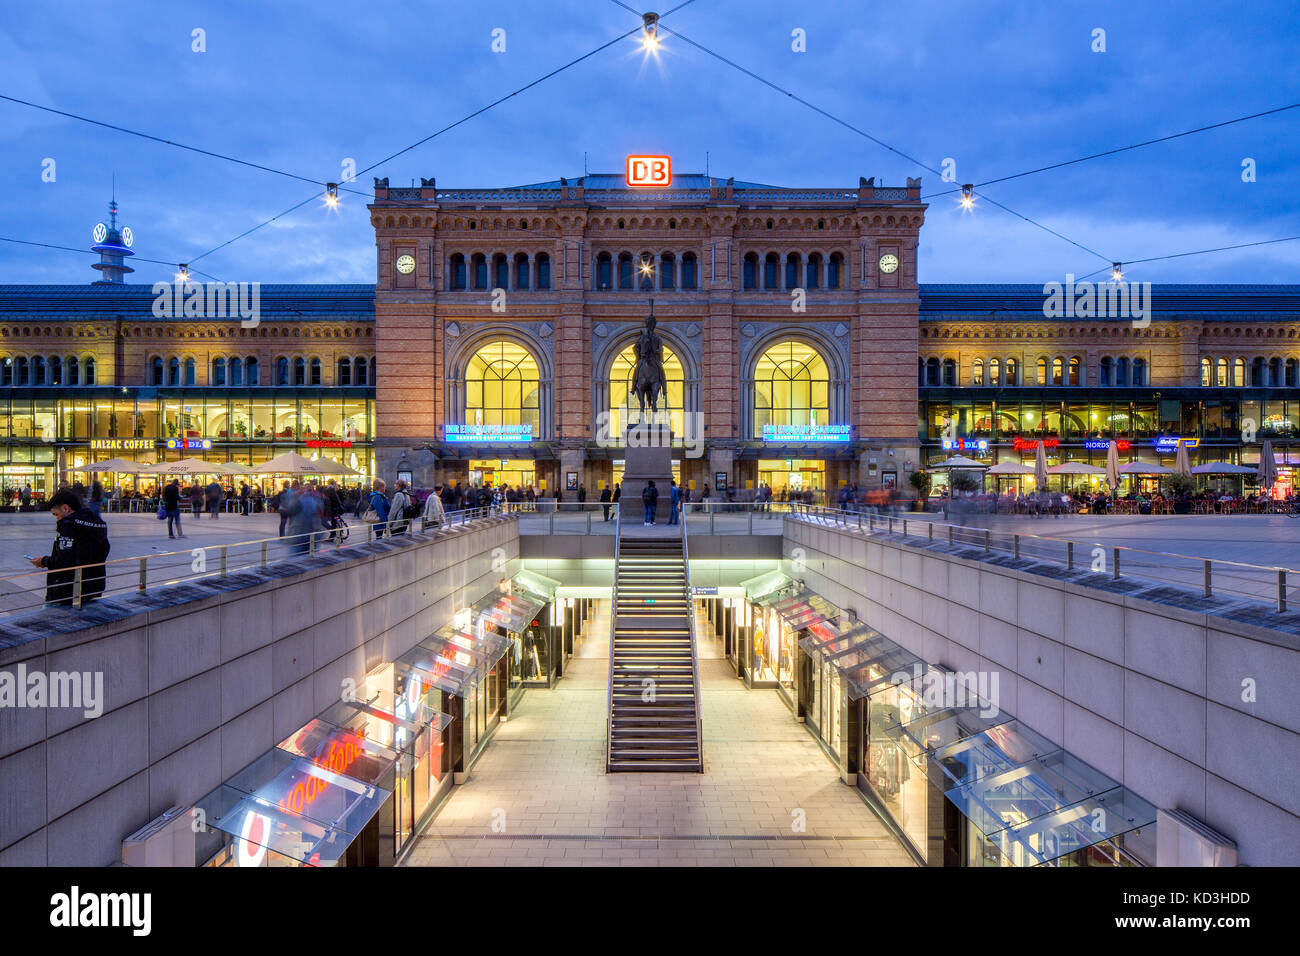 La stazione ferroviaria principale, di fronte shop street Niki de Saint Phalle-promenade o passerelle, sera alba, dal centro città di Hannover Foto Stock